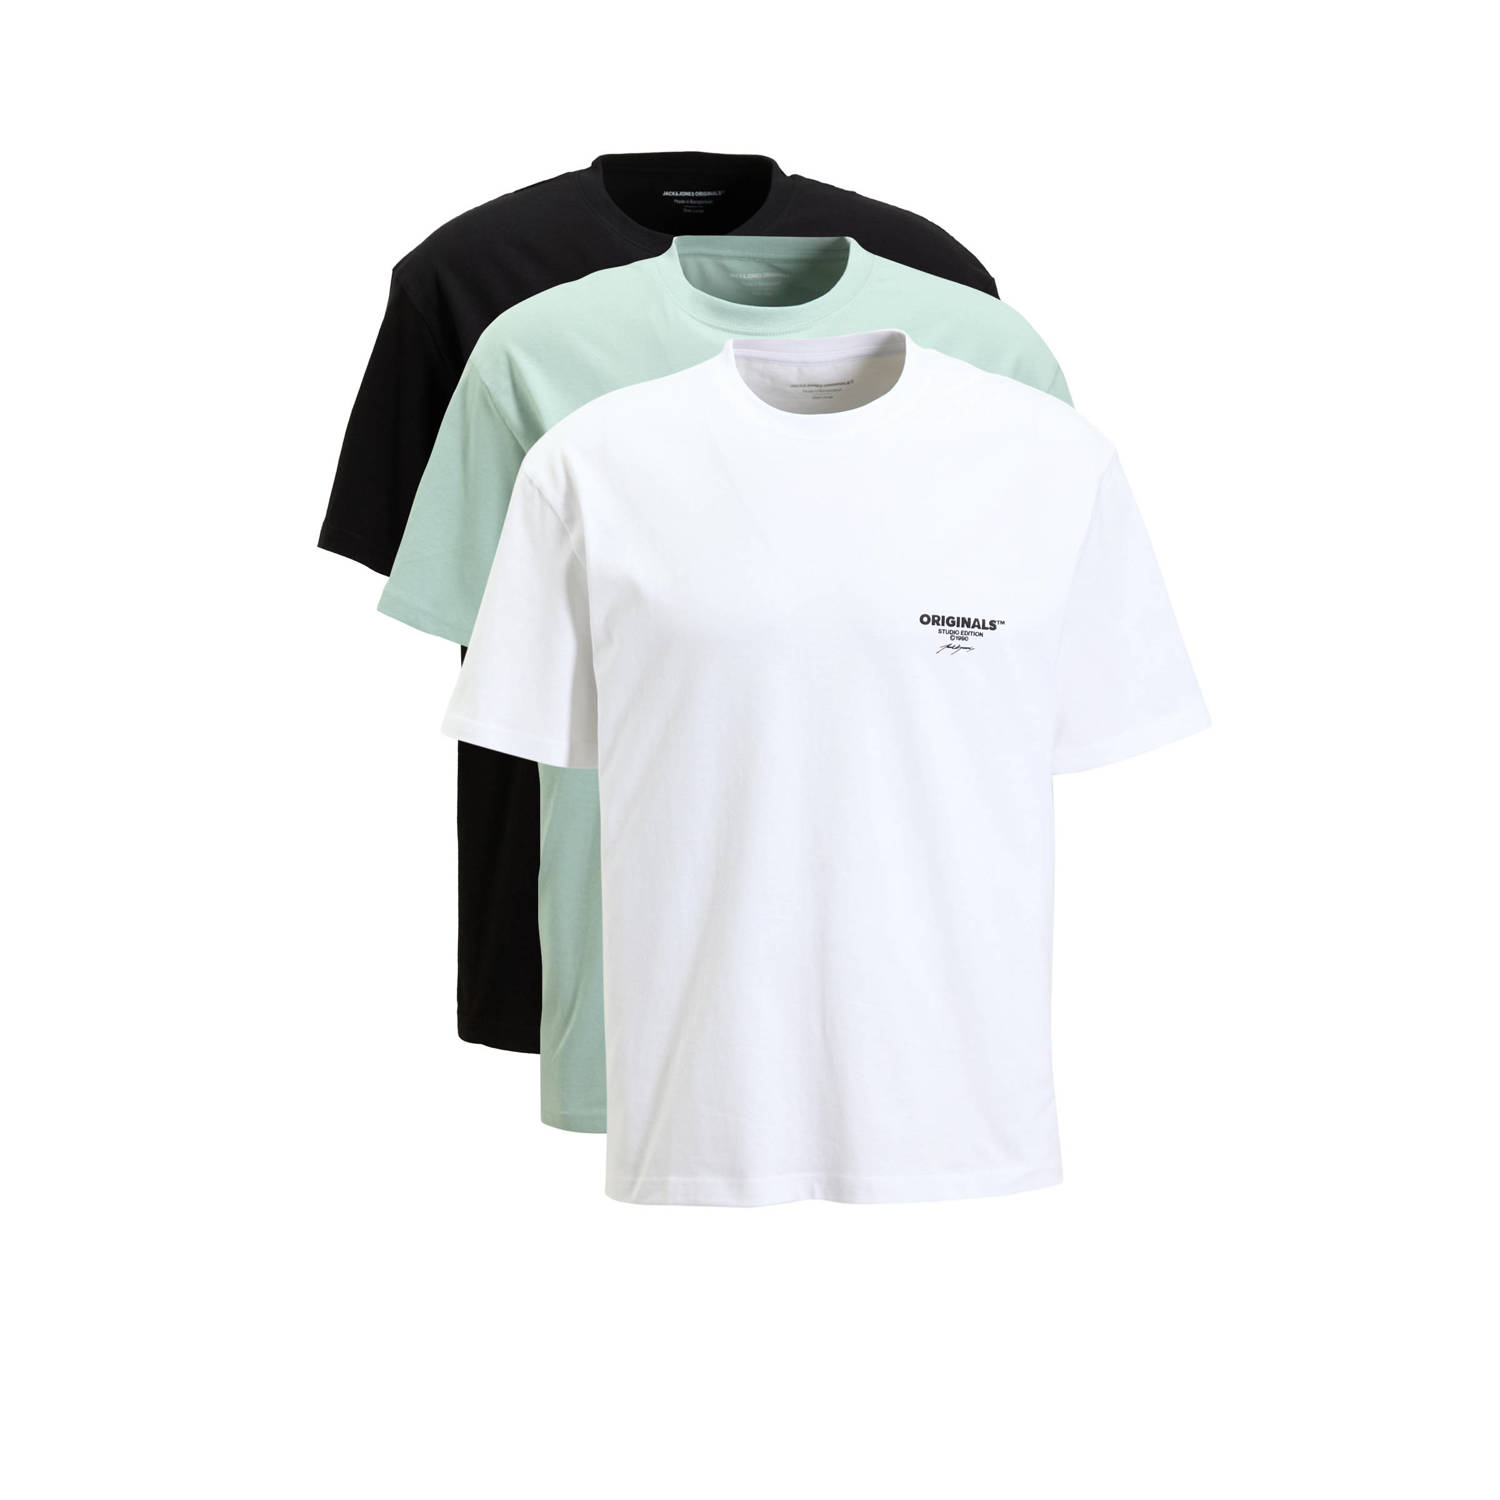 Jack & jones Originals Bora Branding Shirts Heren (3-pack)